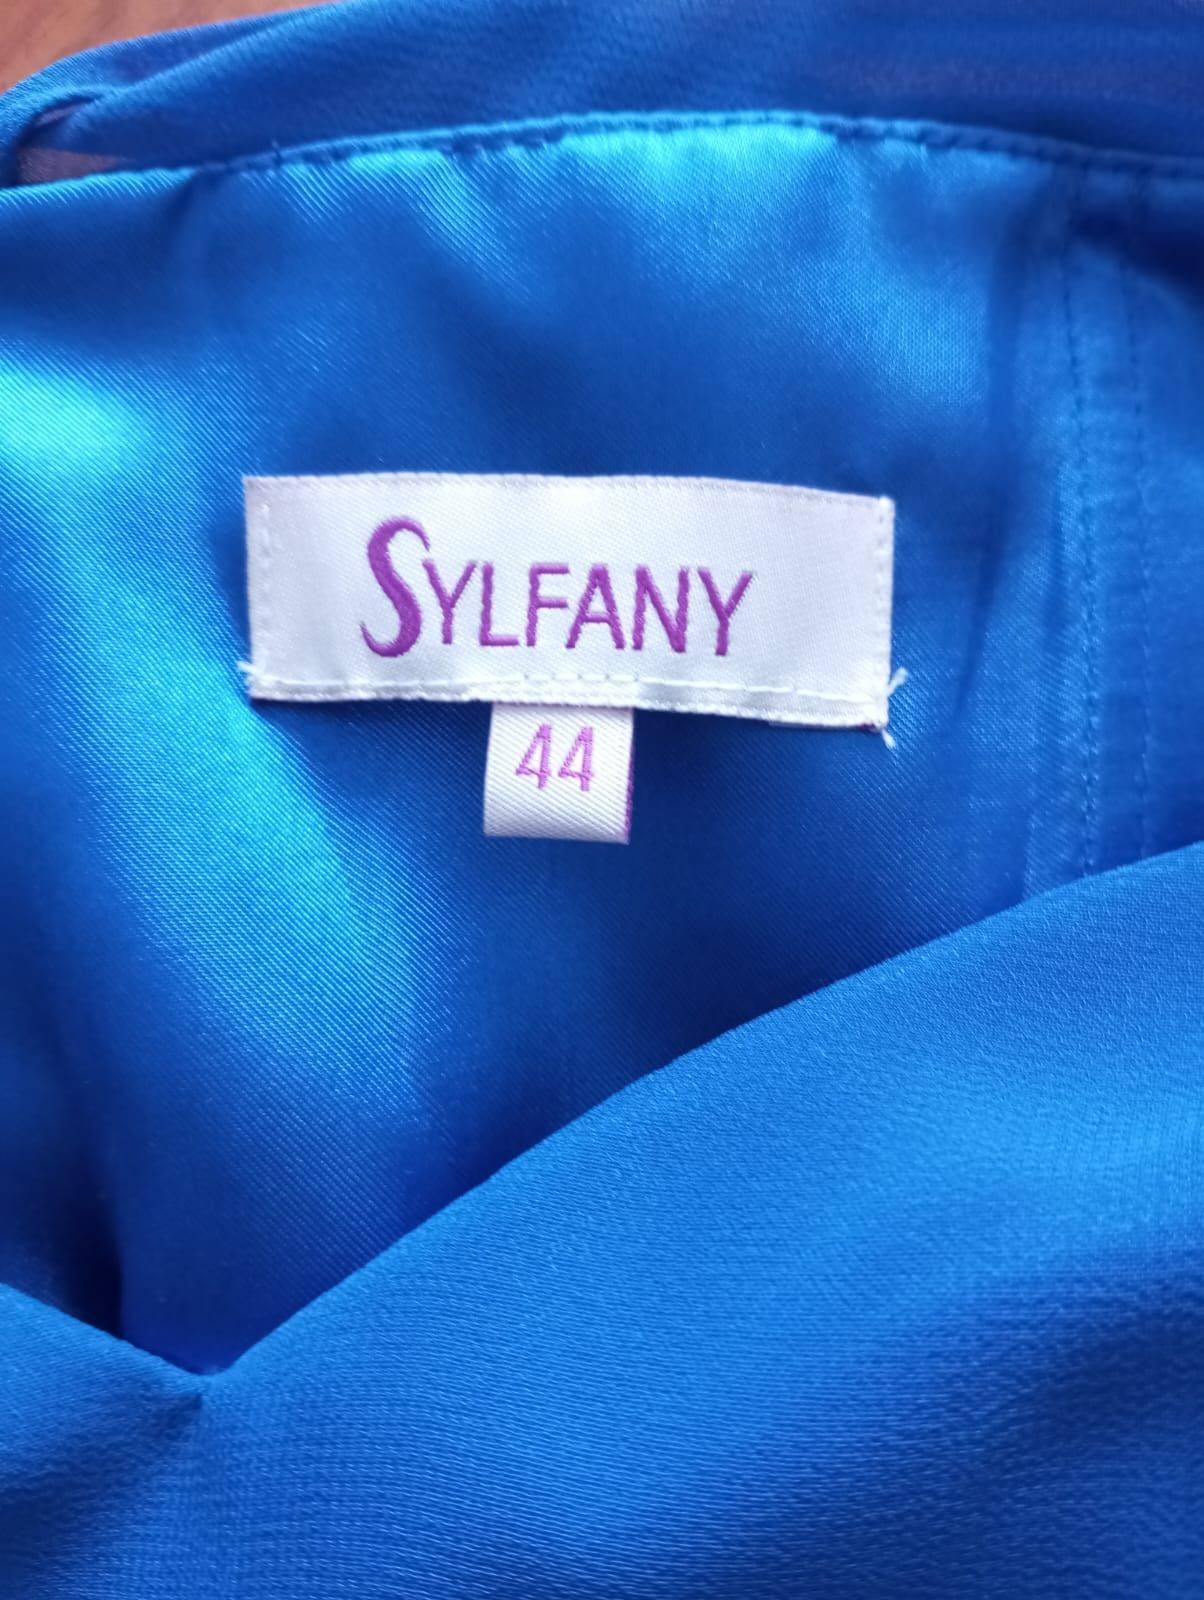 Vestido Sylfany Tamanho 44